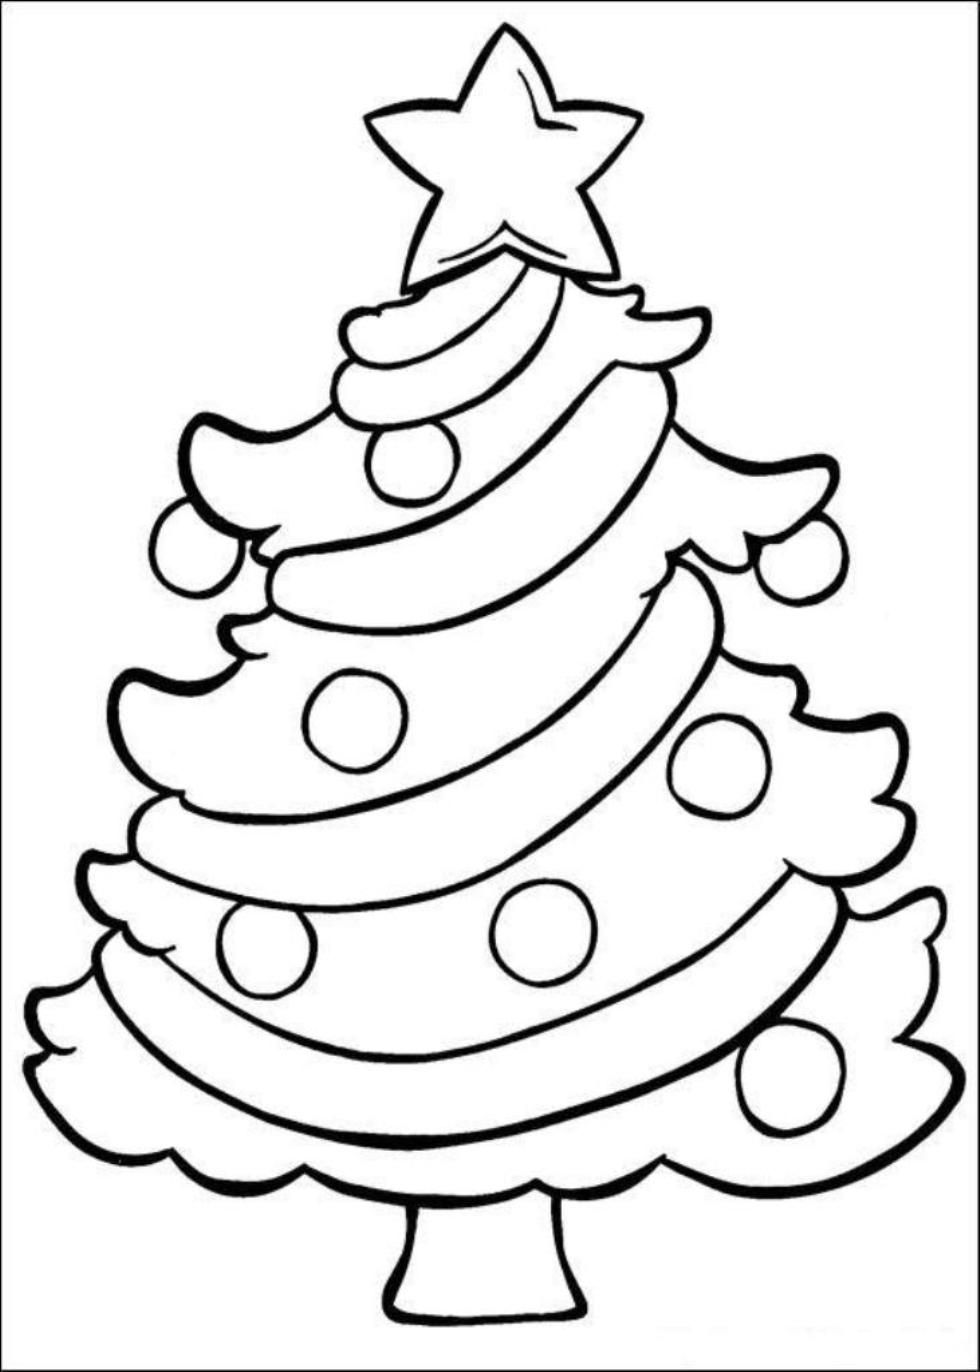 50 Christmas Tree Printable Templates Kittybabylovecom